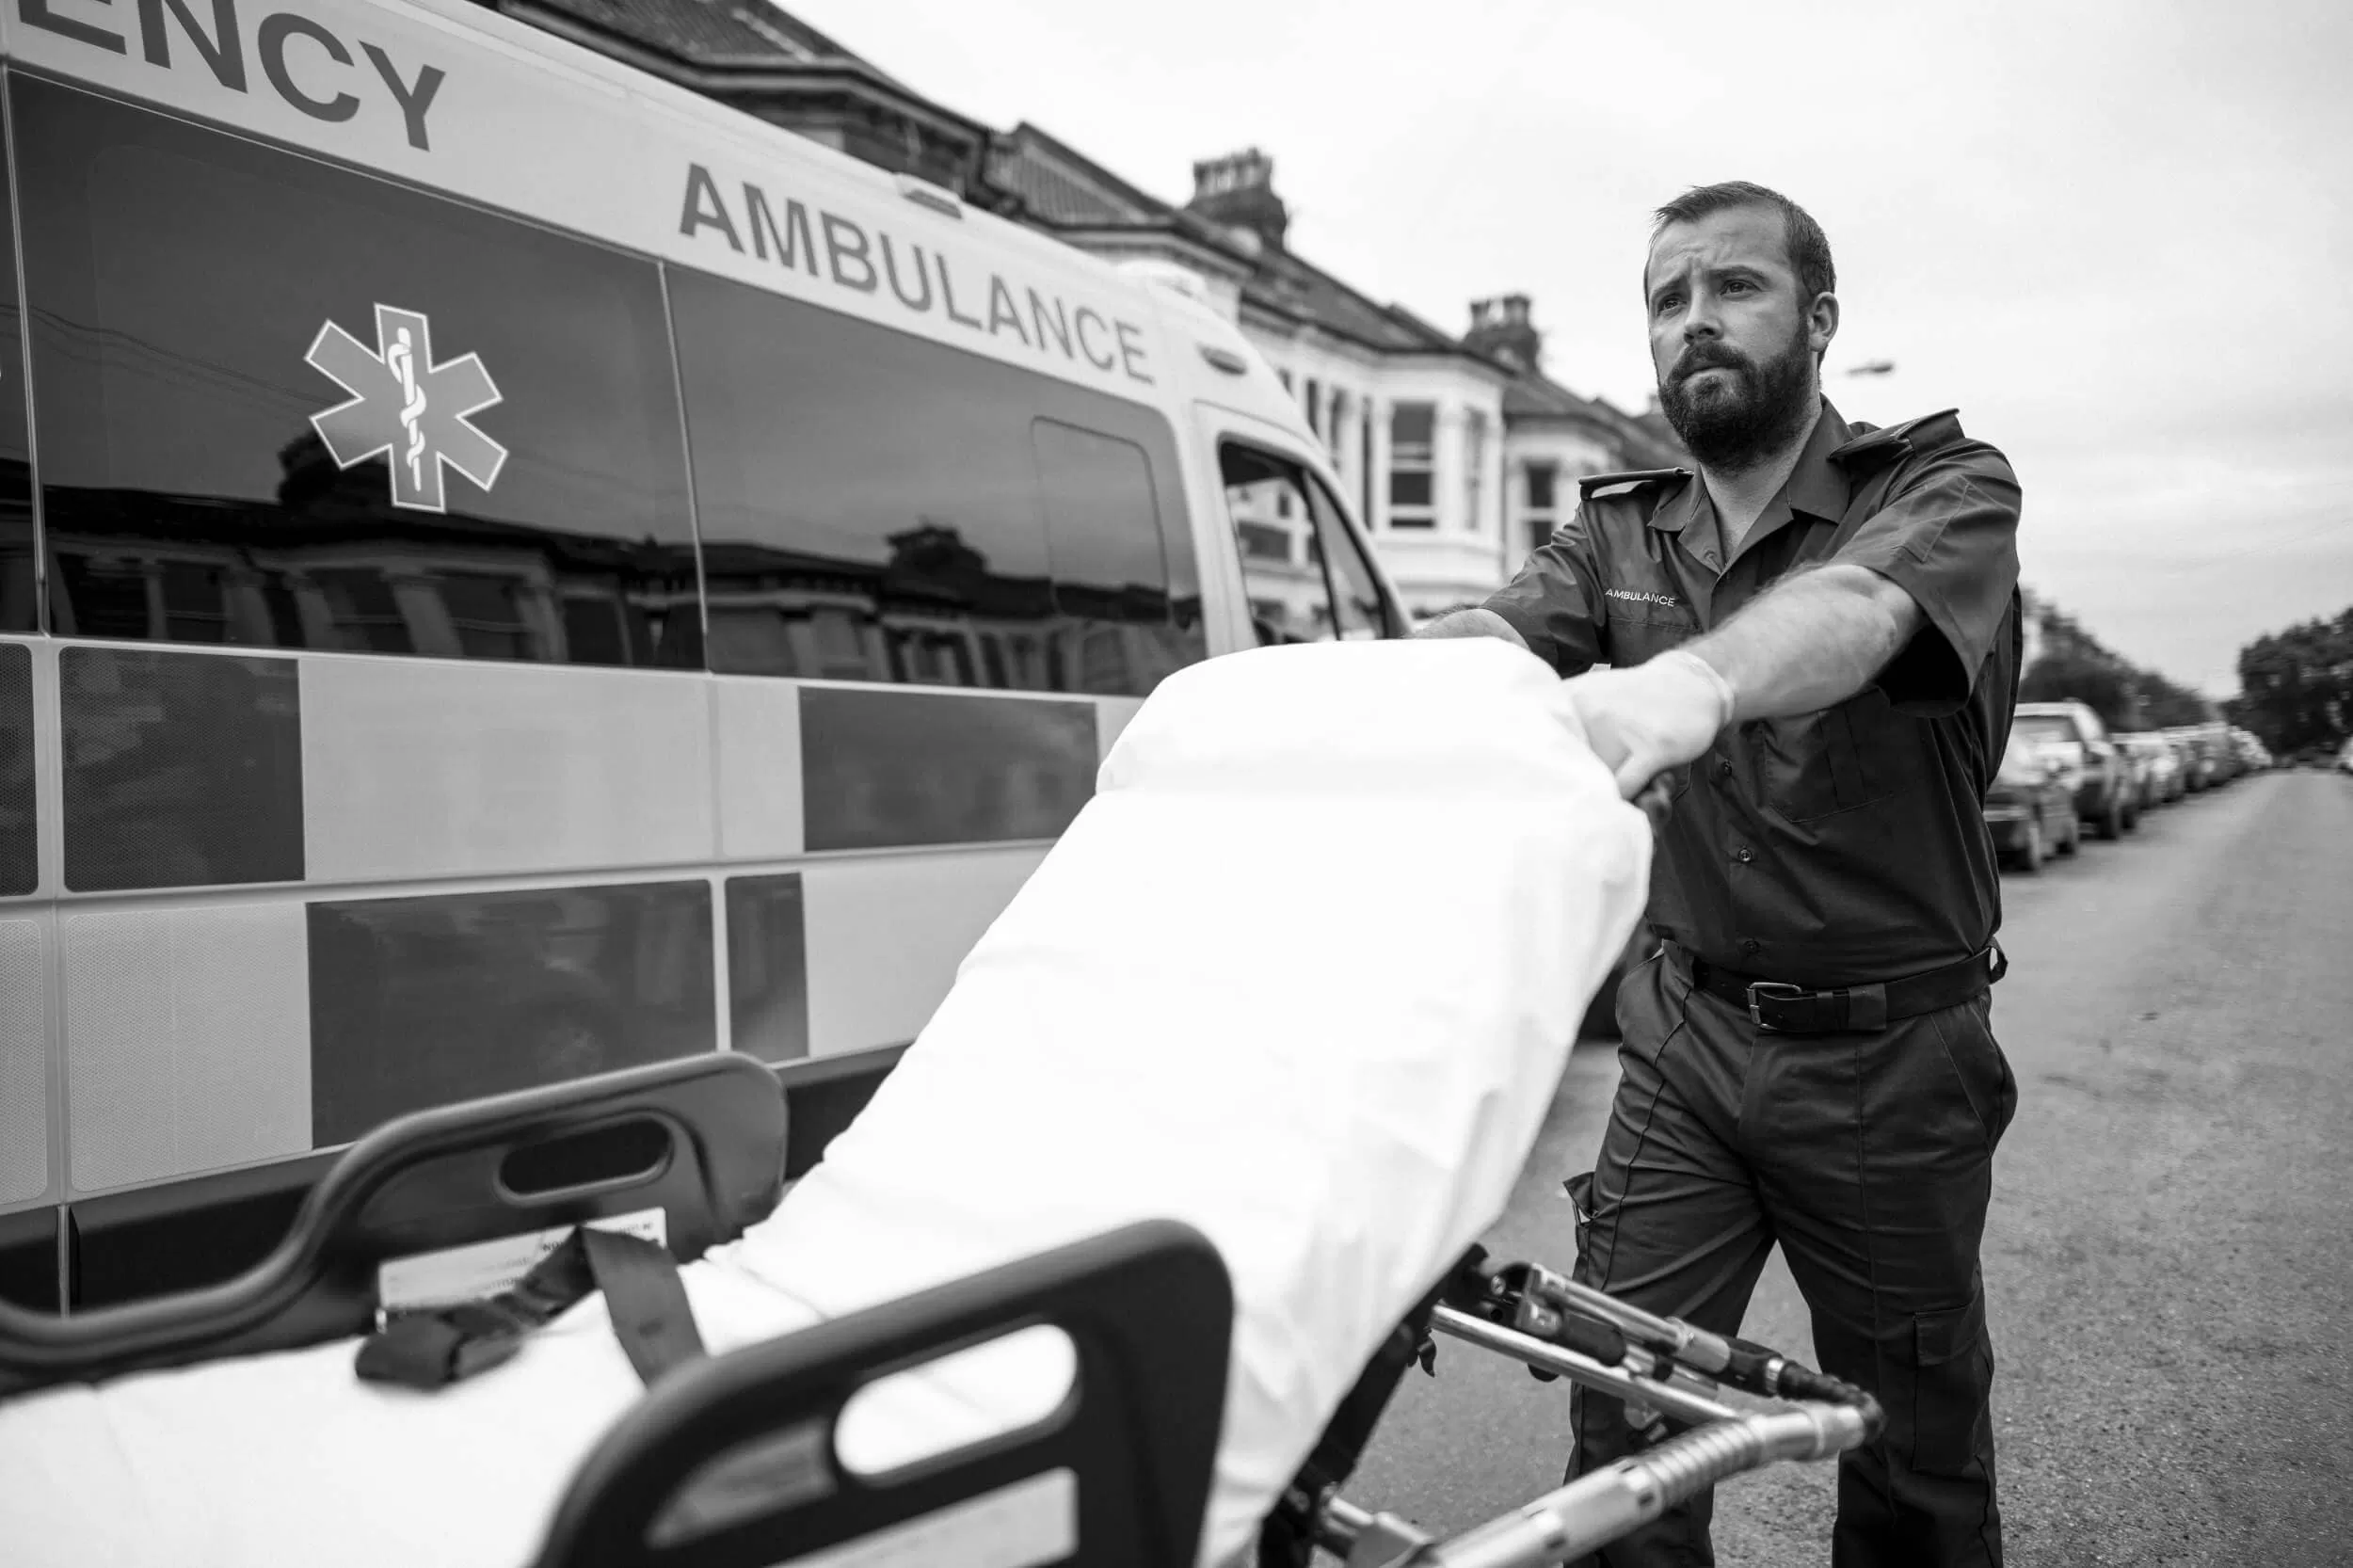 Ambulance with paramedic